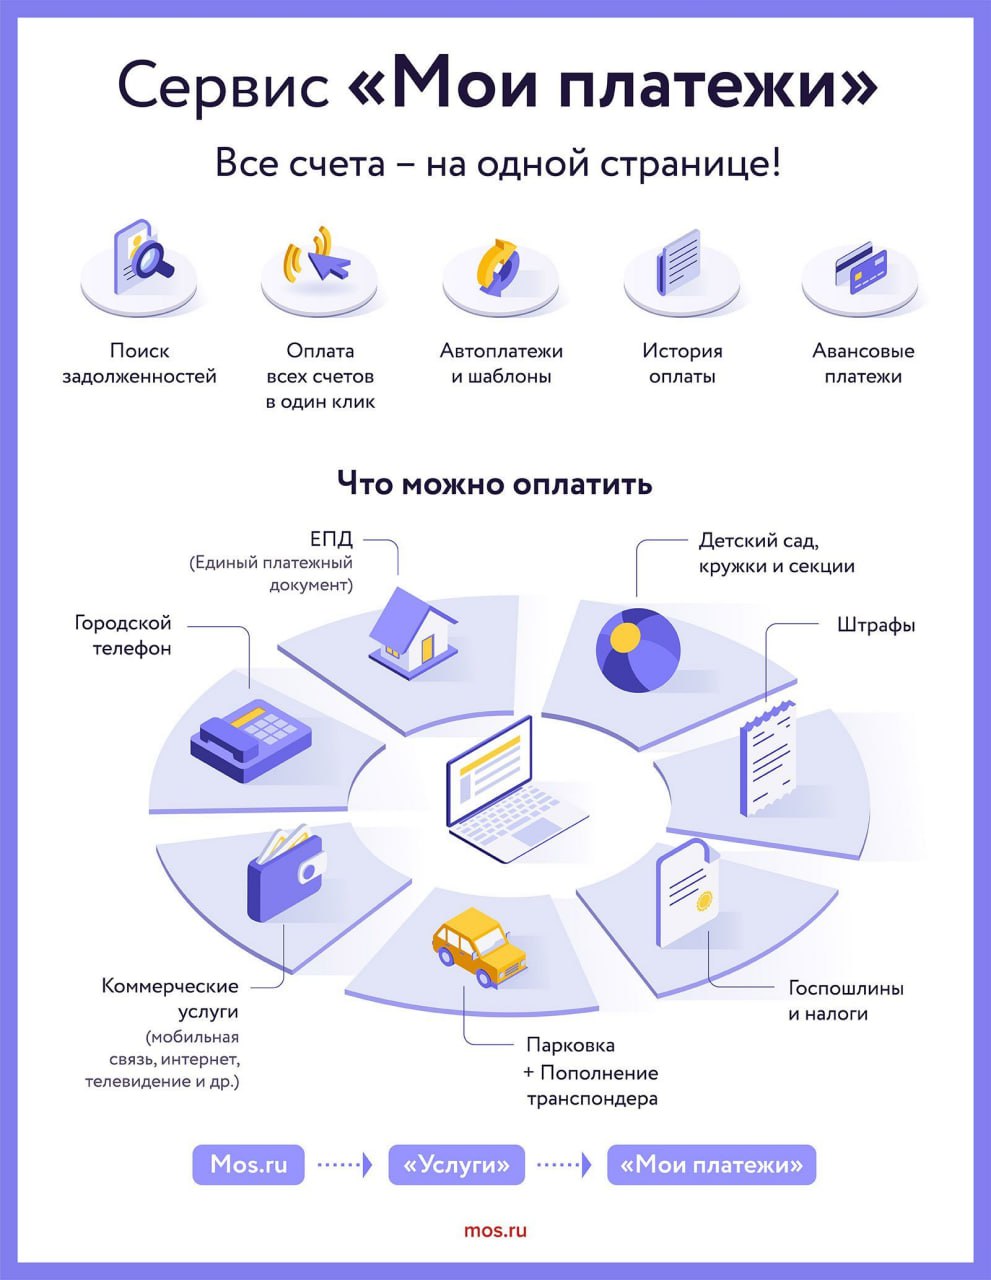 Москвичи стали пользоваться сервисом «Мои платежи»﻿ на mos.ru в четыре раза чаще